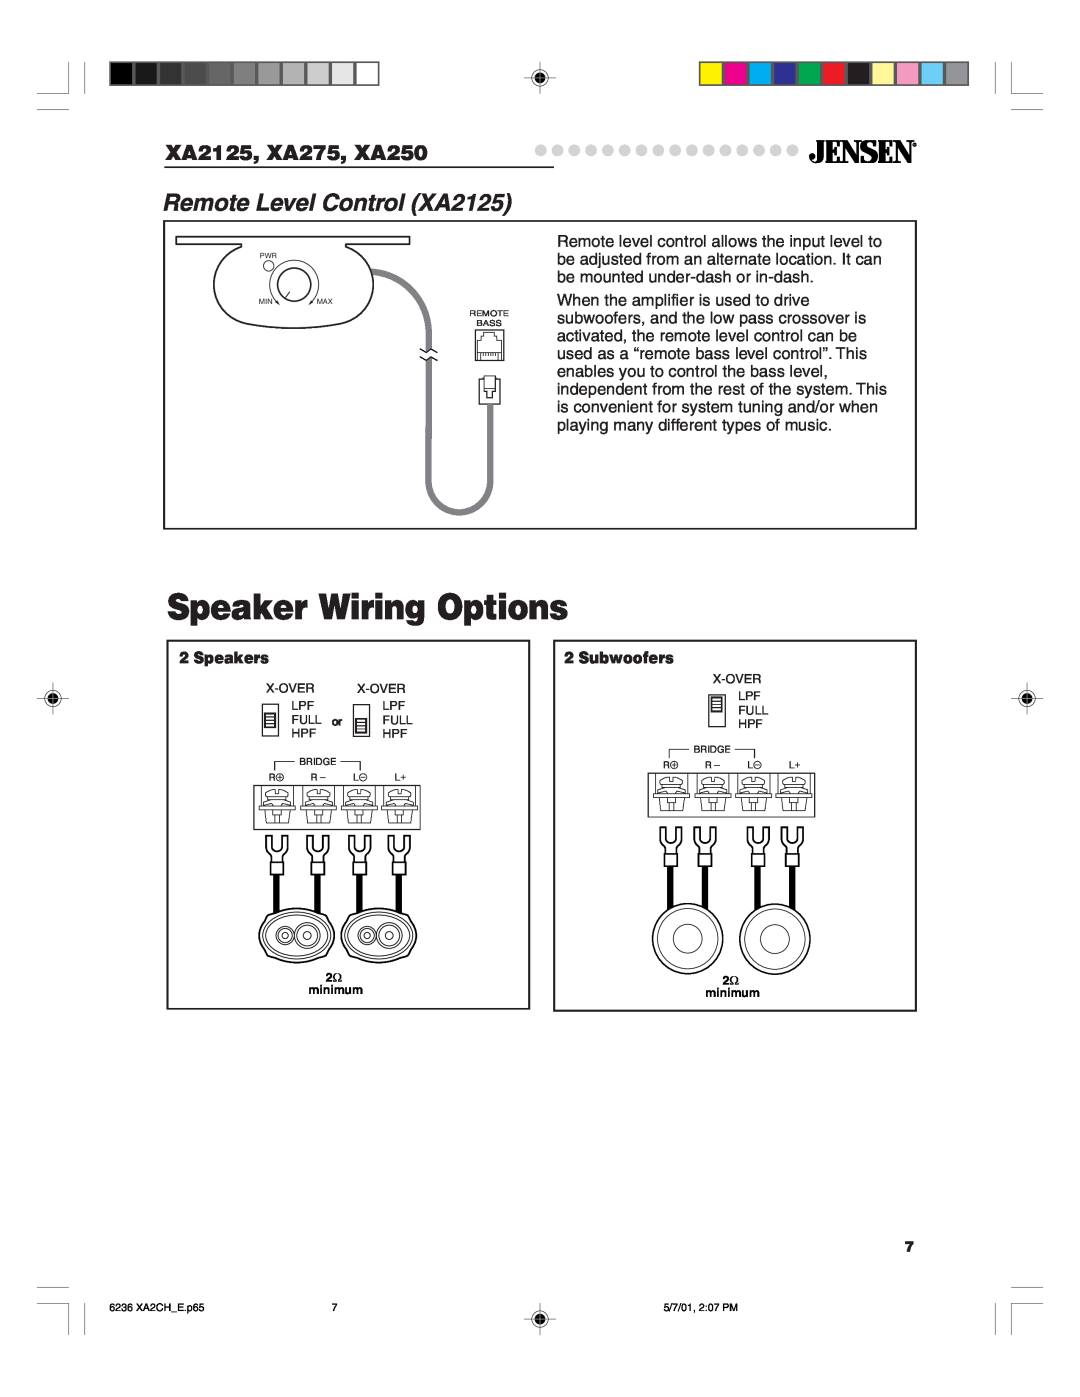 Jensen Tools warranty Speaker Wiring Options, Remote Level Control XA2125, XA2125, XA275, XA250, Speakers, Subwoofers 